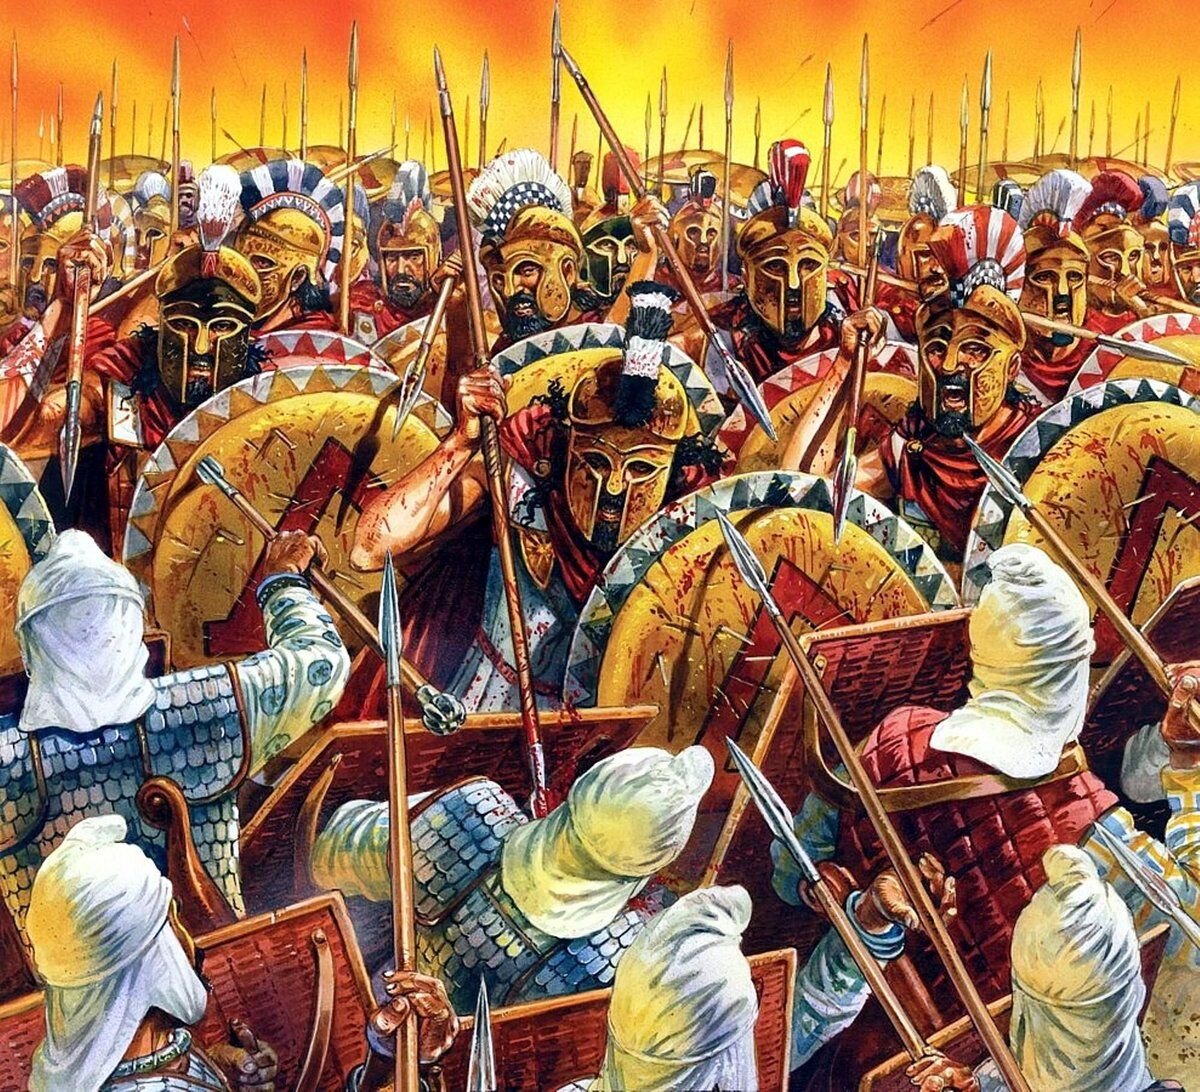 После битвы персидское царство перестало существовать. Спарта Фермопильское сражение. 300 Спартанцев битва при Фермопилах. Фермопильское сражение 300 спартанцев. 479 Году до н.э. битва при Платеи.